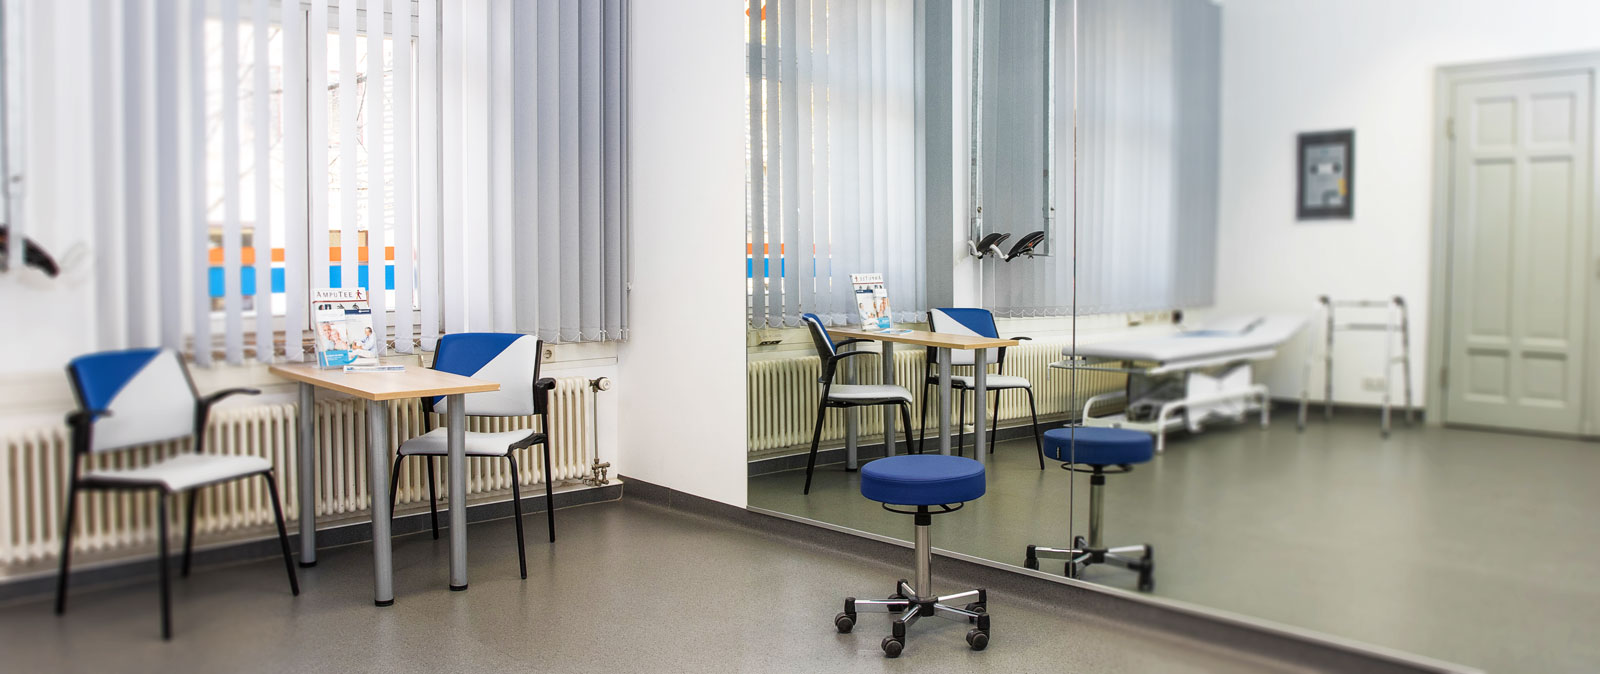 BUSCH. Orthopädietechnik und Sanitätshaus in Halle (Saale) – Simulatoren und Einlagen